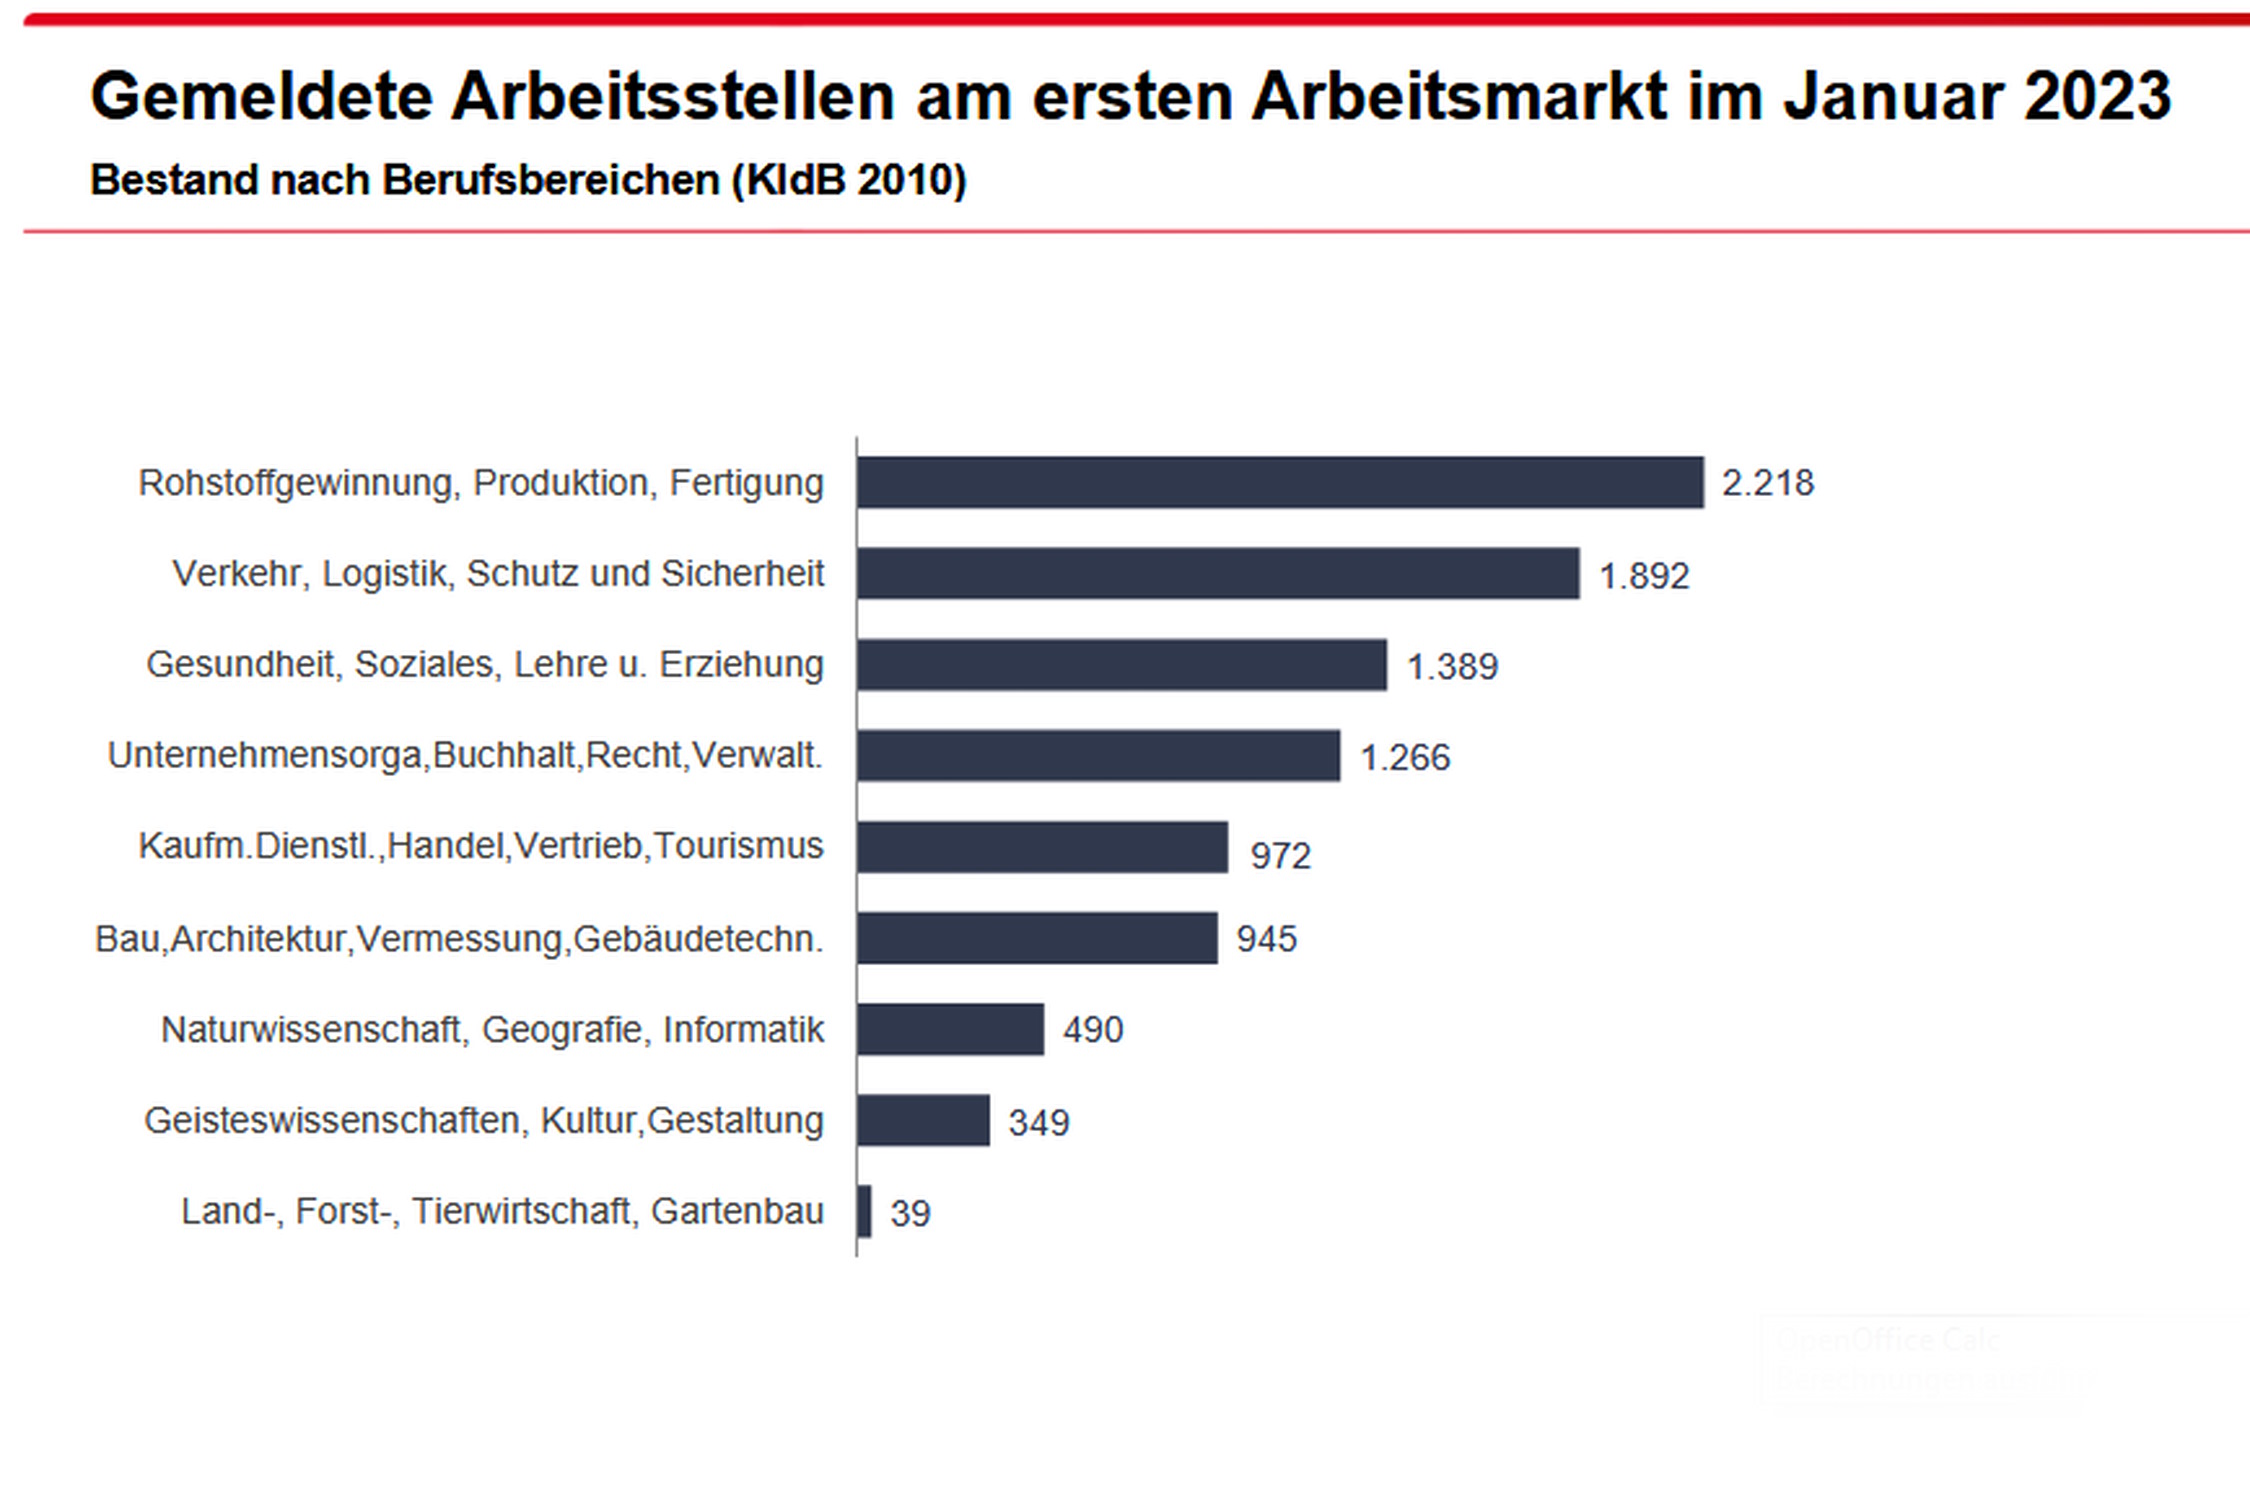 Die gemeldeten freien Stellen nach Wirtschaftszweigen. Grafik: Arbeitsagentur Leipzig